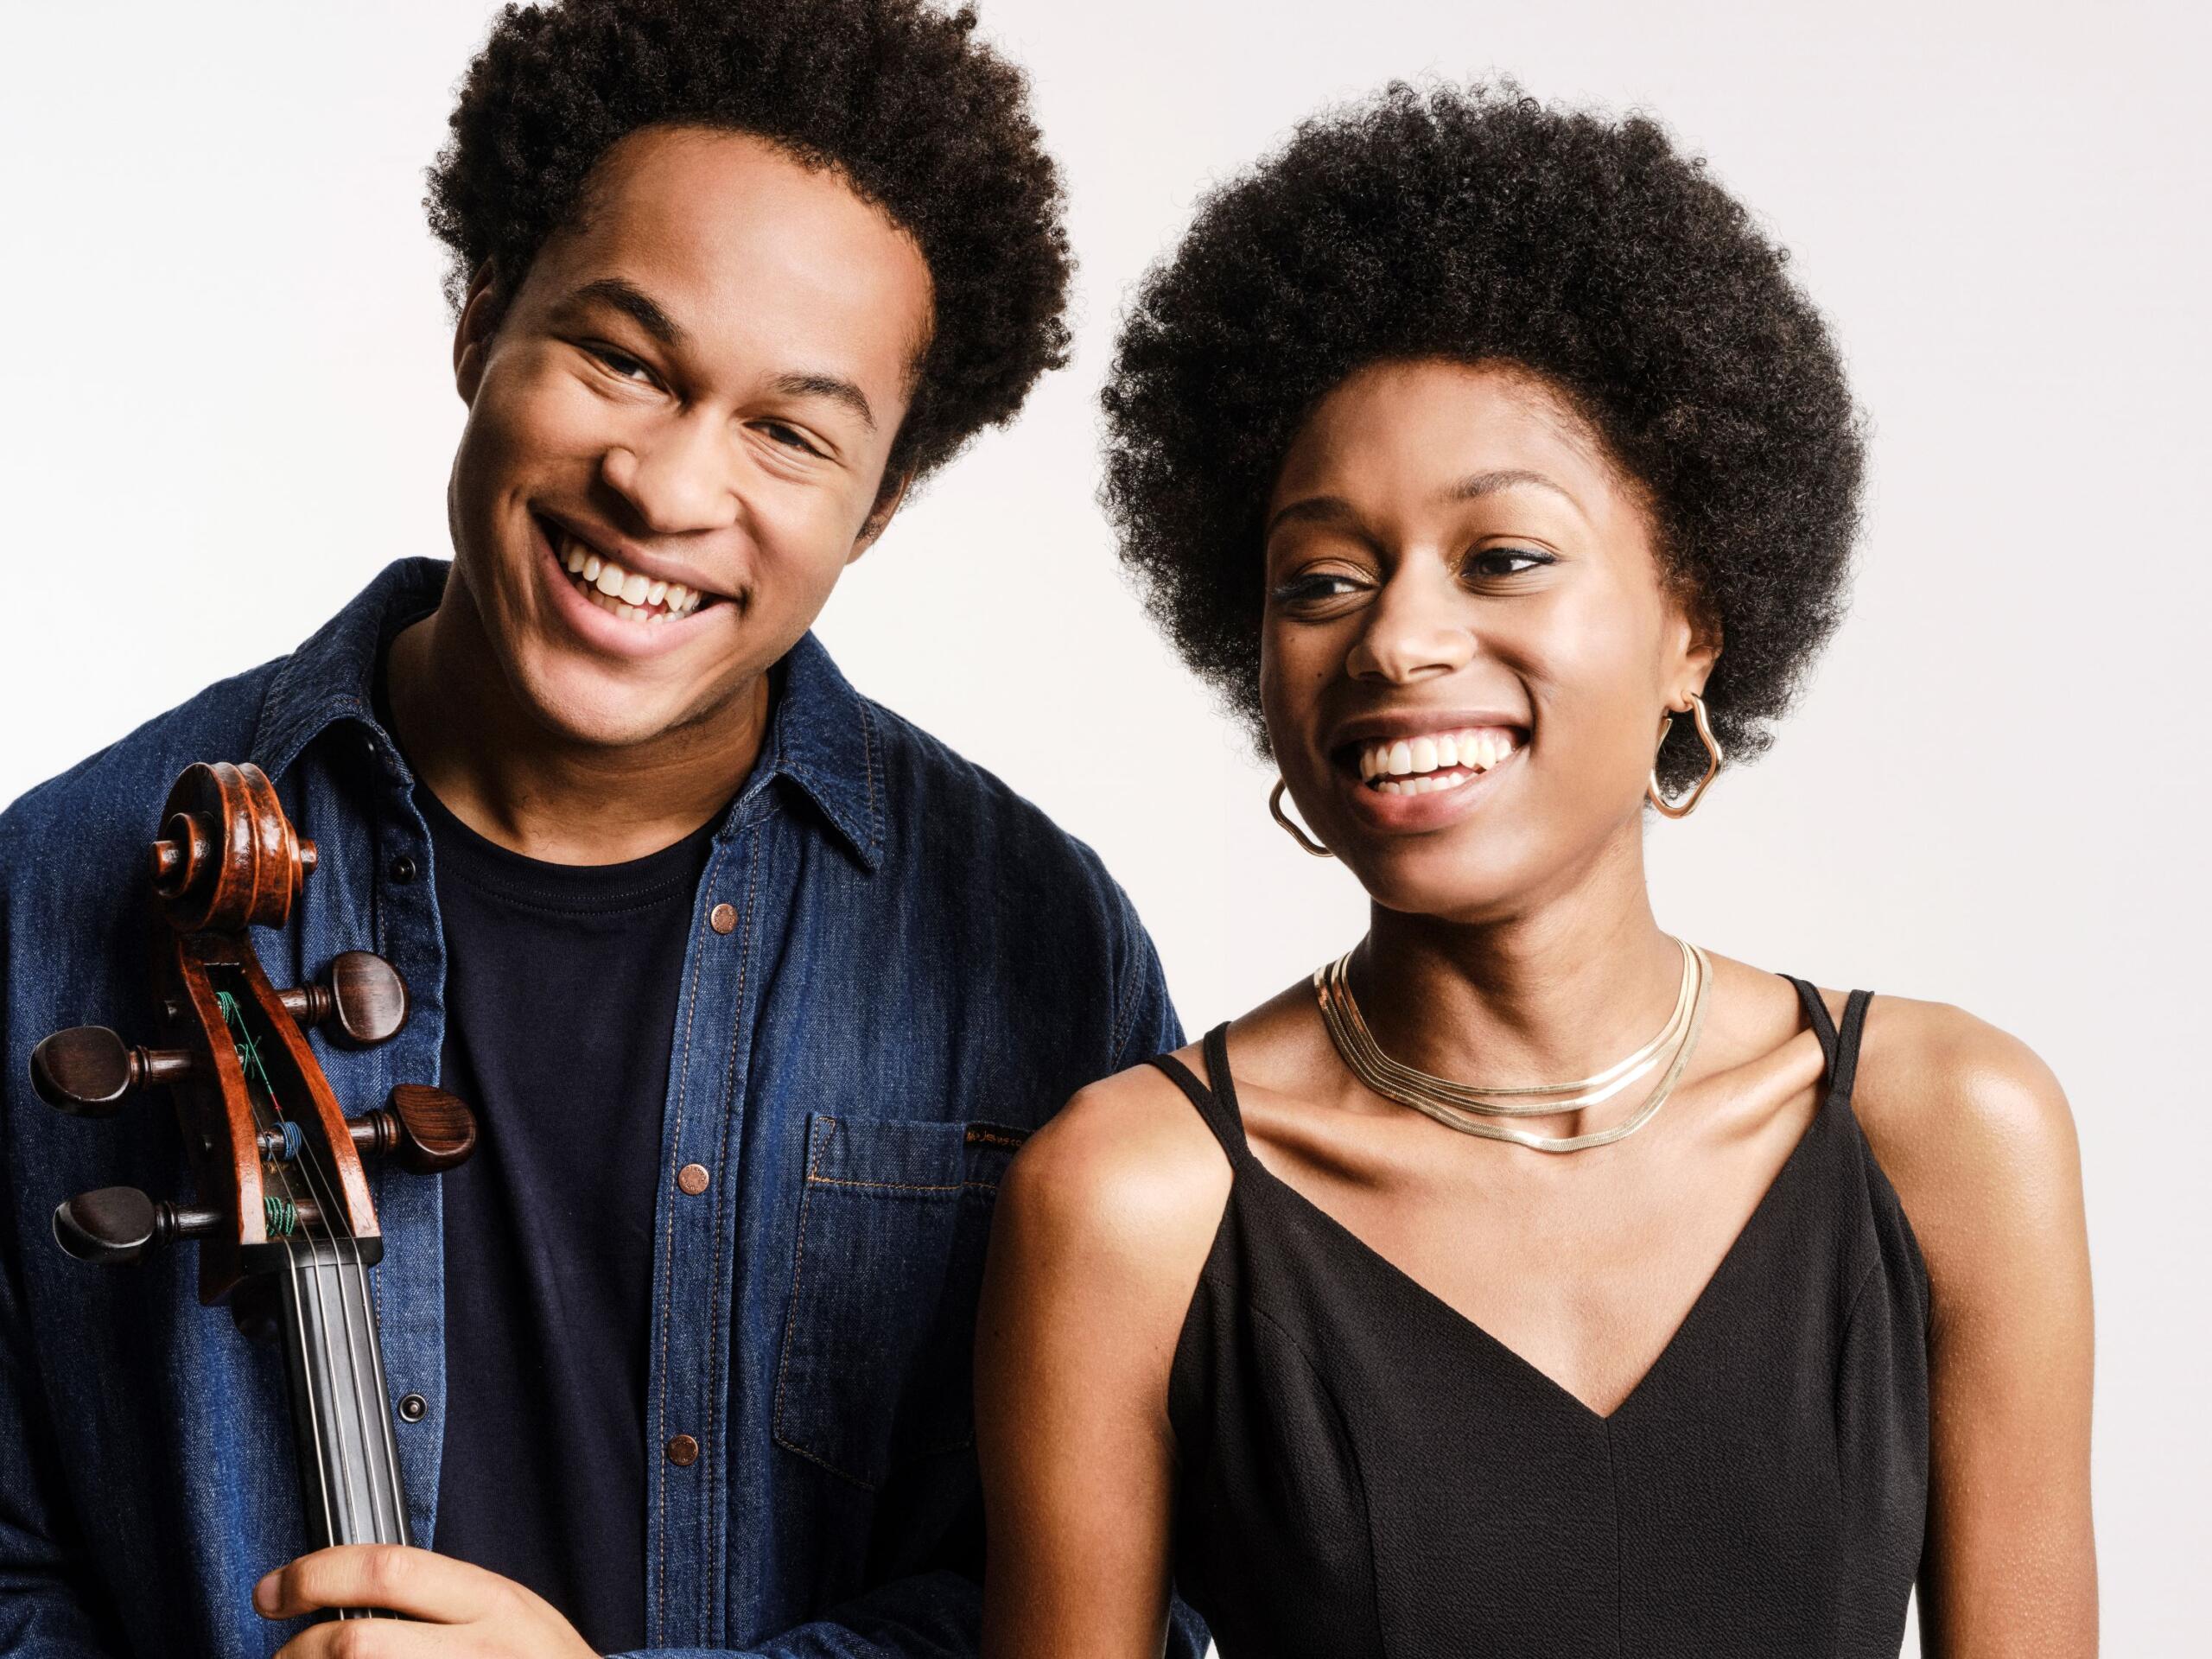 Ein junger Mann und eine junge Frau nah beieinander, sie haben beide Afrofrisuren und lachen in die Kamera.